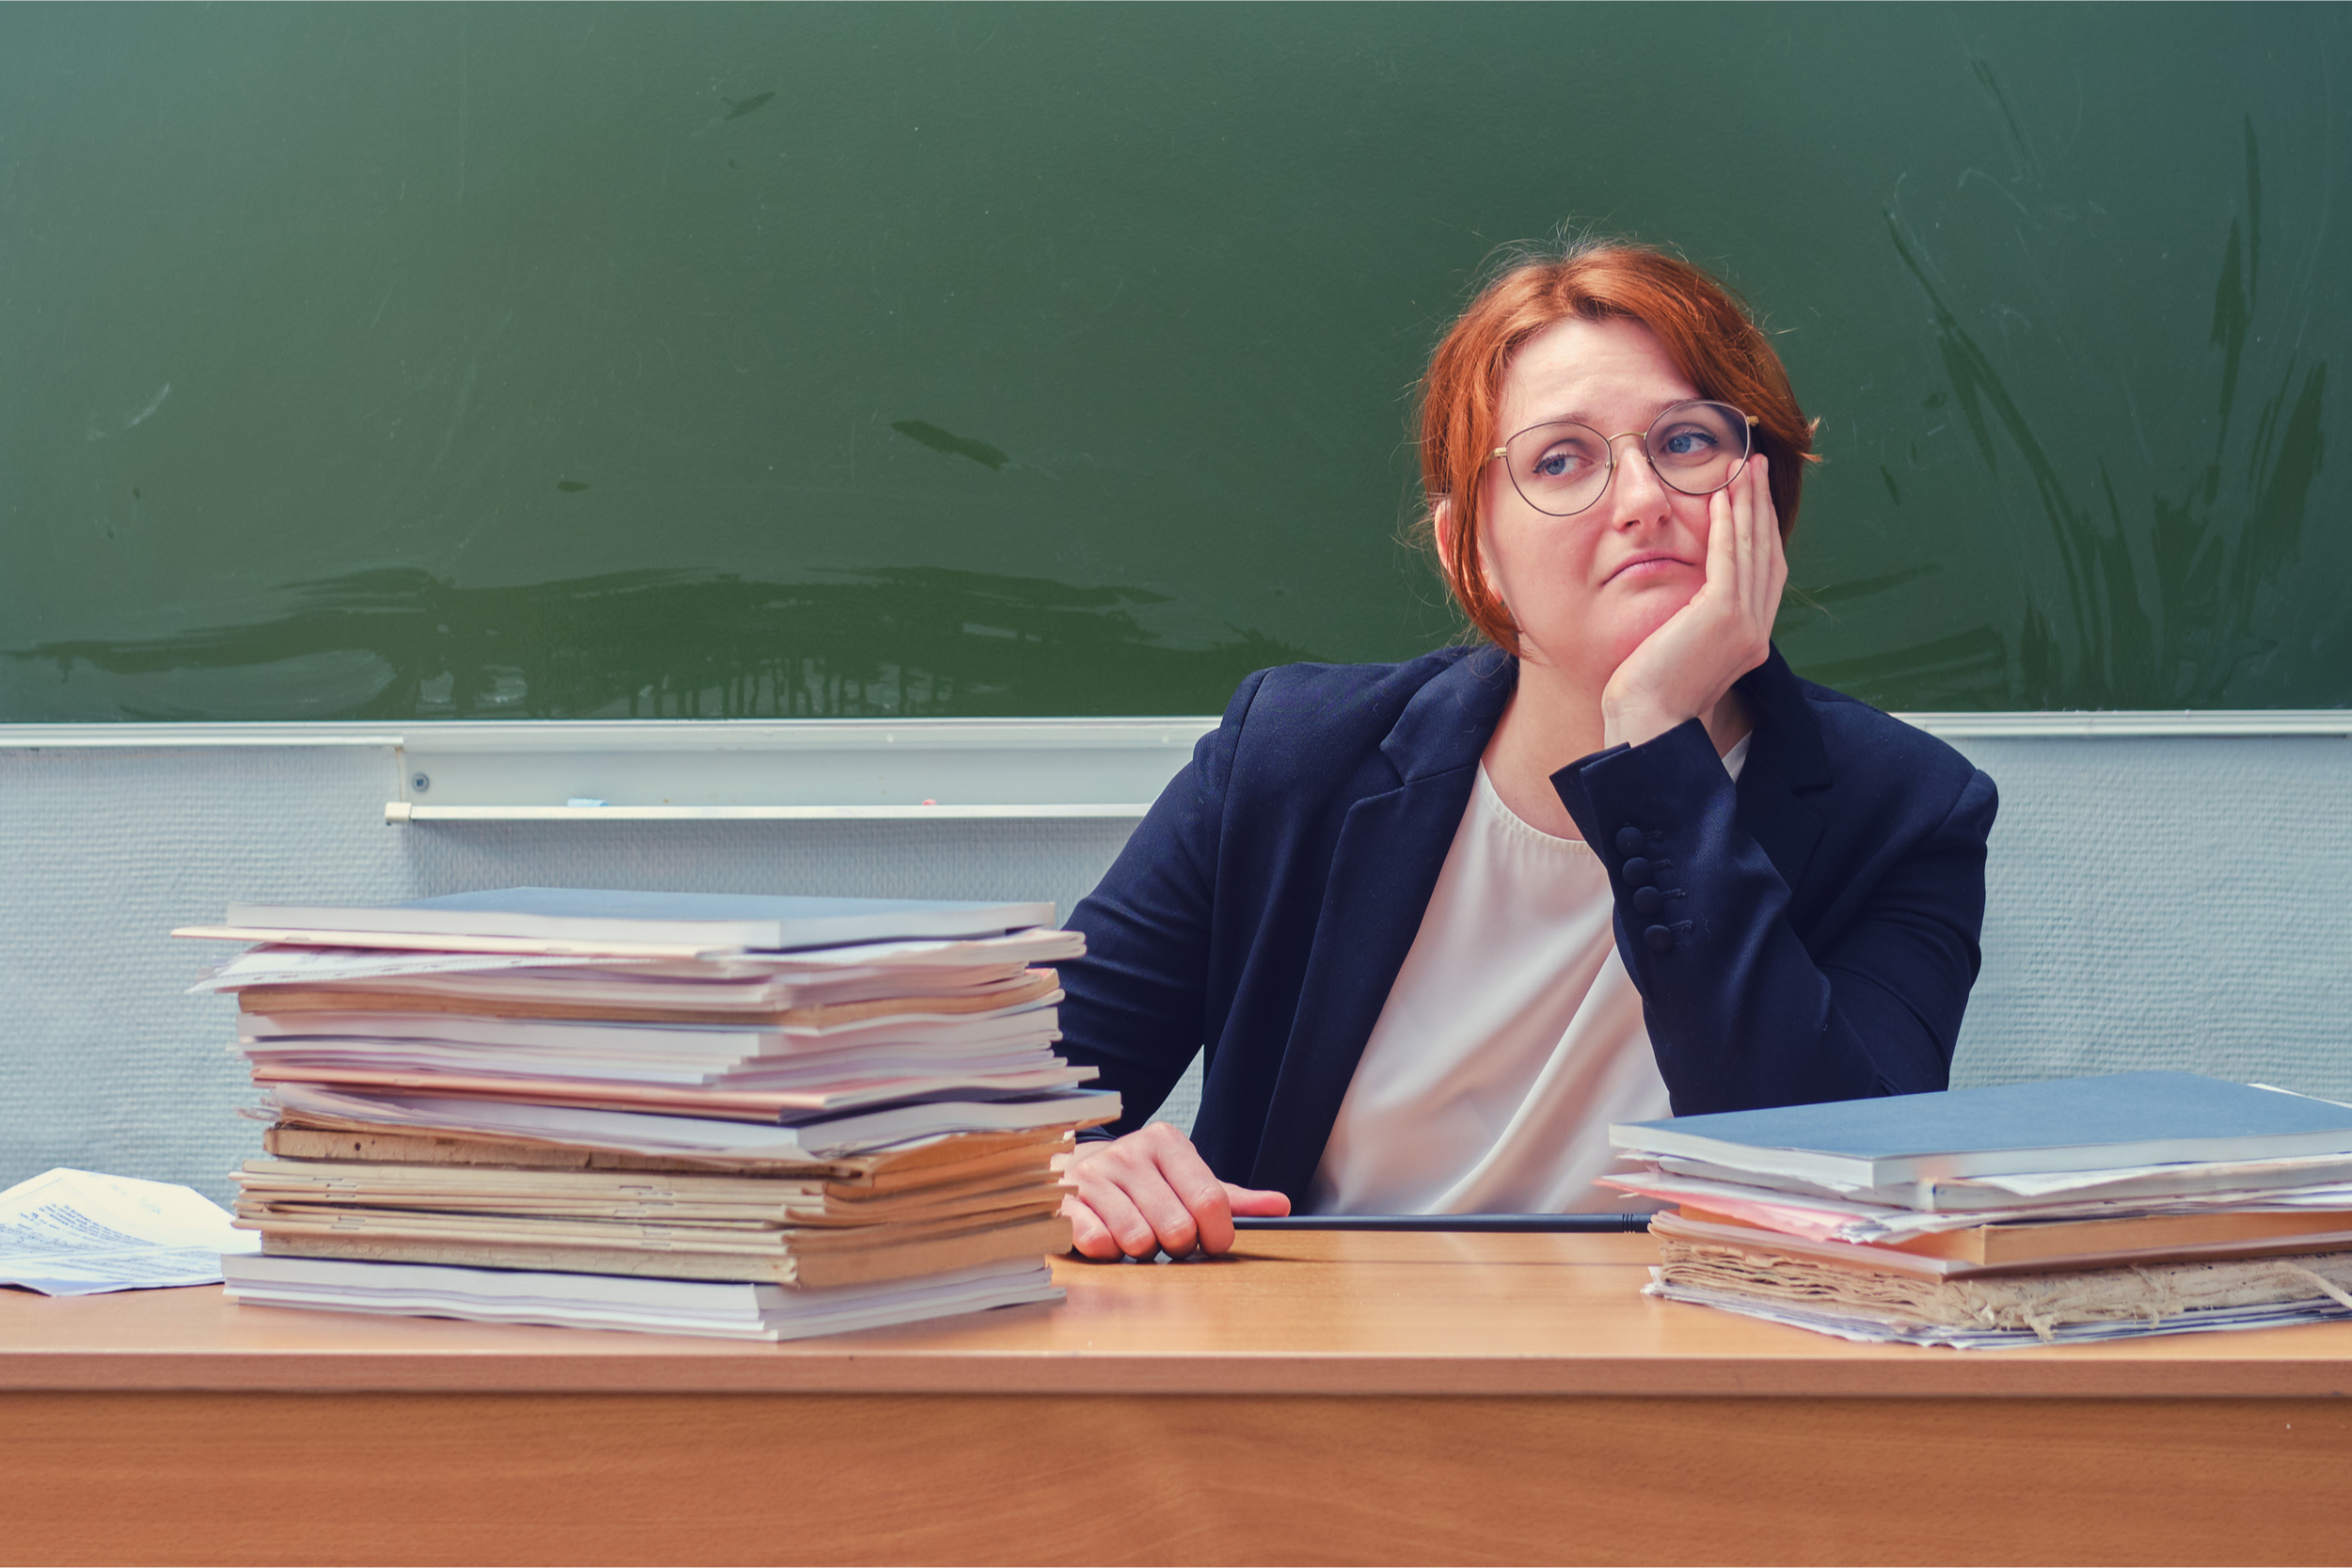 Edukacja, nauczyciele, braki kadrowe w szkołach, fot. Shutterstock,